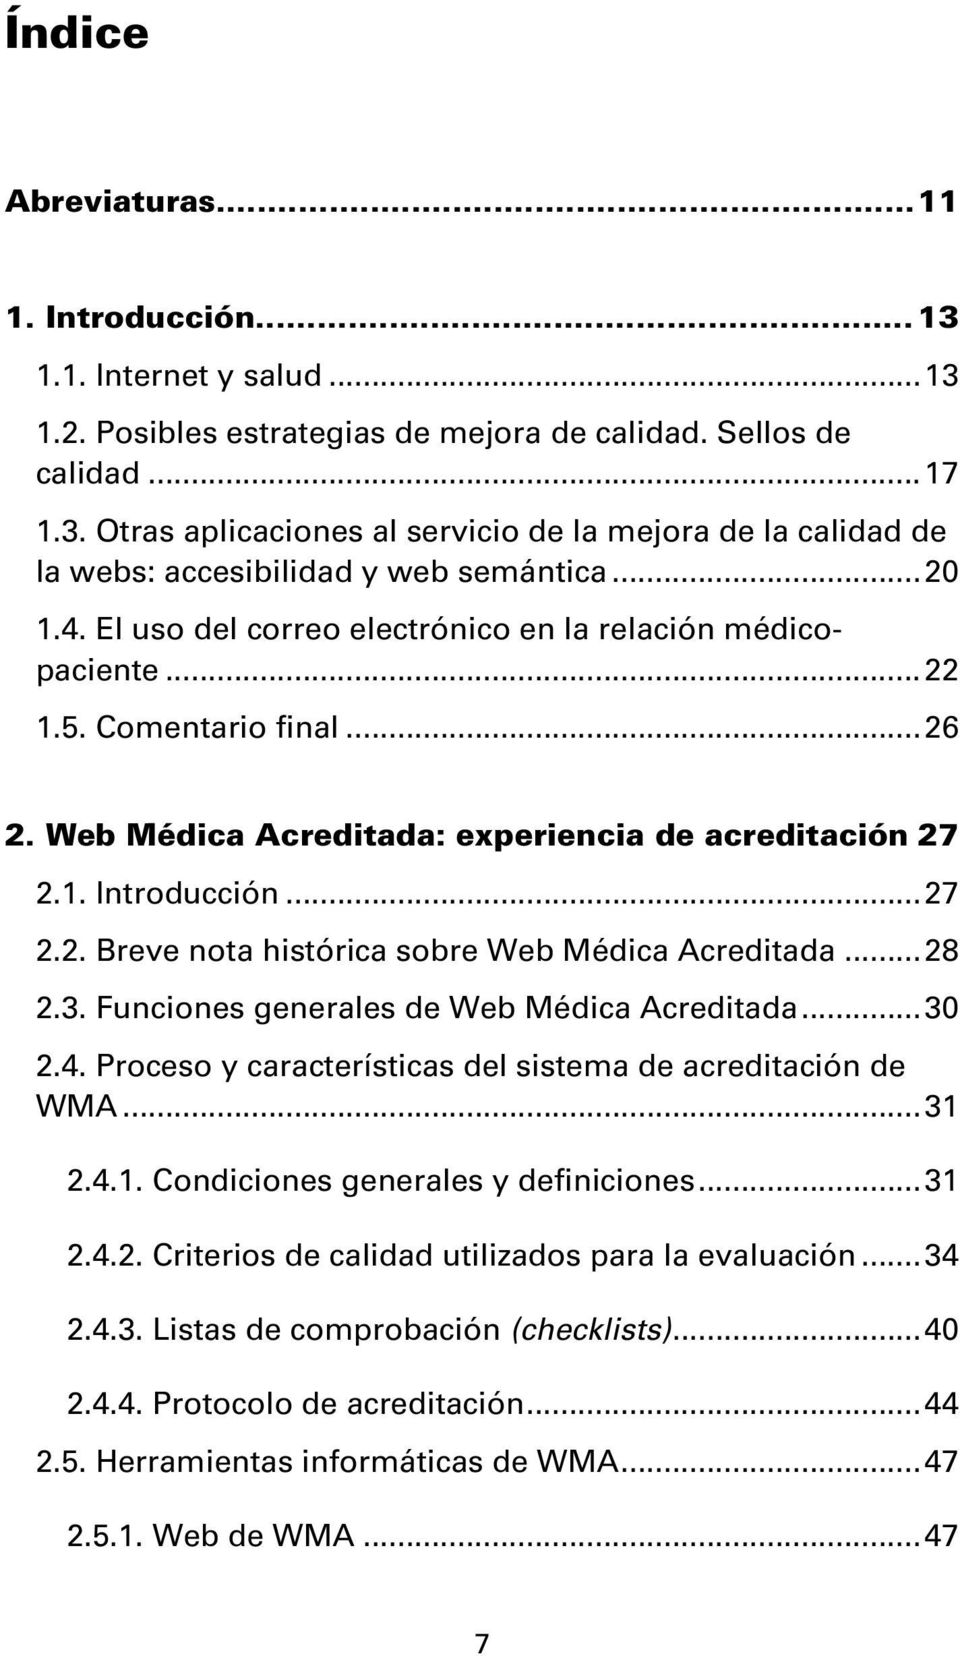 ..28 2.3. Funciones generales de Web Médica Acreditada...30 2.4. Proceso y características del sistema de acreditación de WMA...31 2.4.1. Condiciones generales y definiciones...31 2.4.2. Criterios de calidad utilizados para la evaluación.